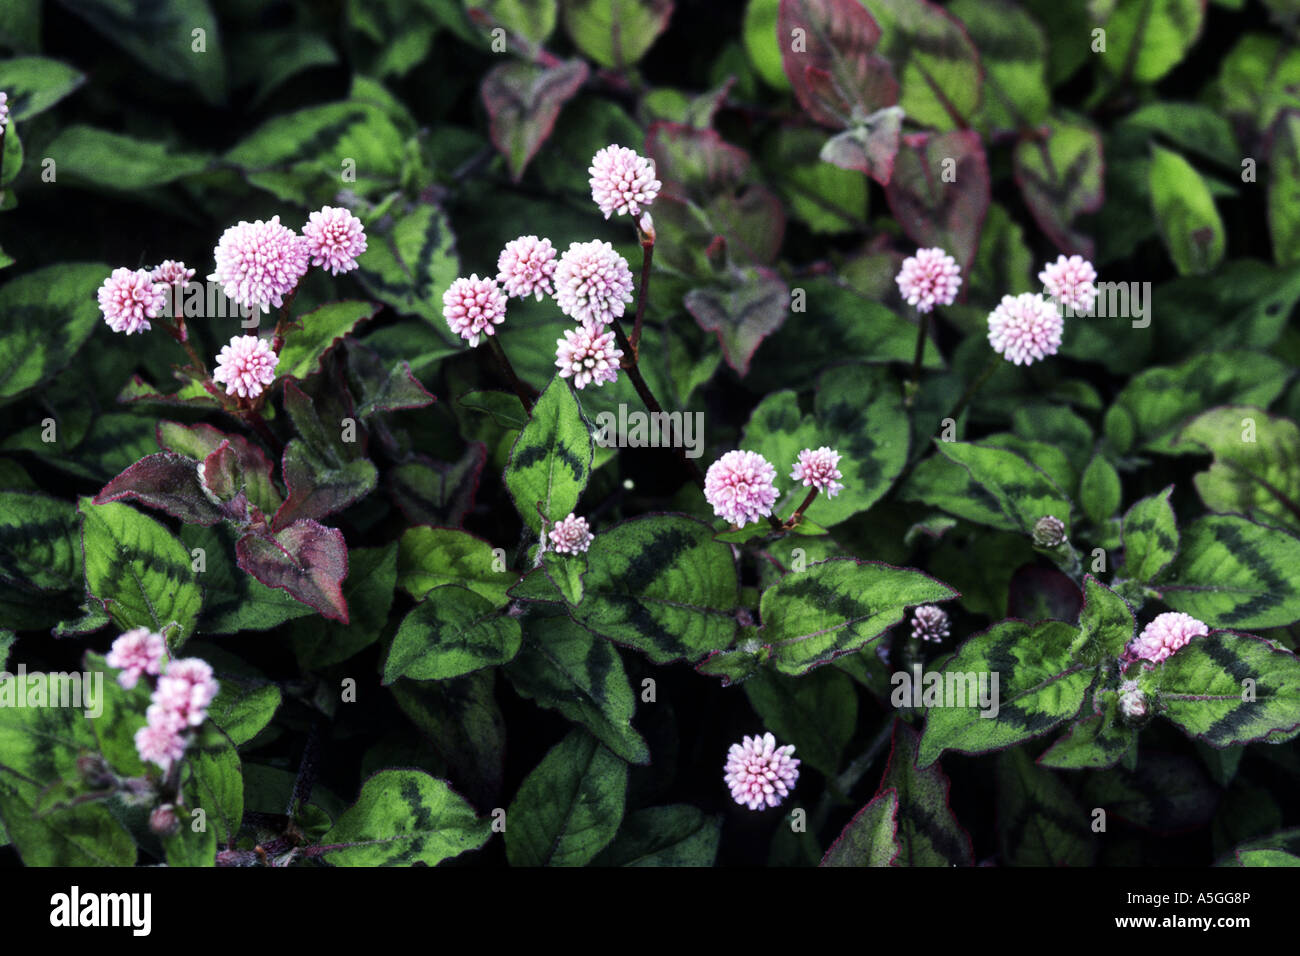 Himalayan smartweed (Polygonum capitatum, Persicaria capitata) Stock Photo